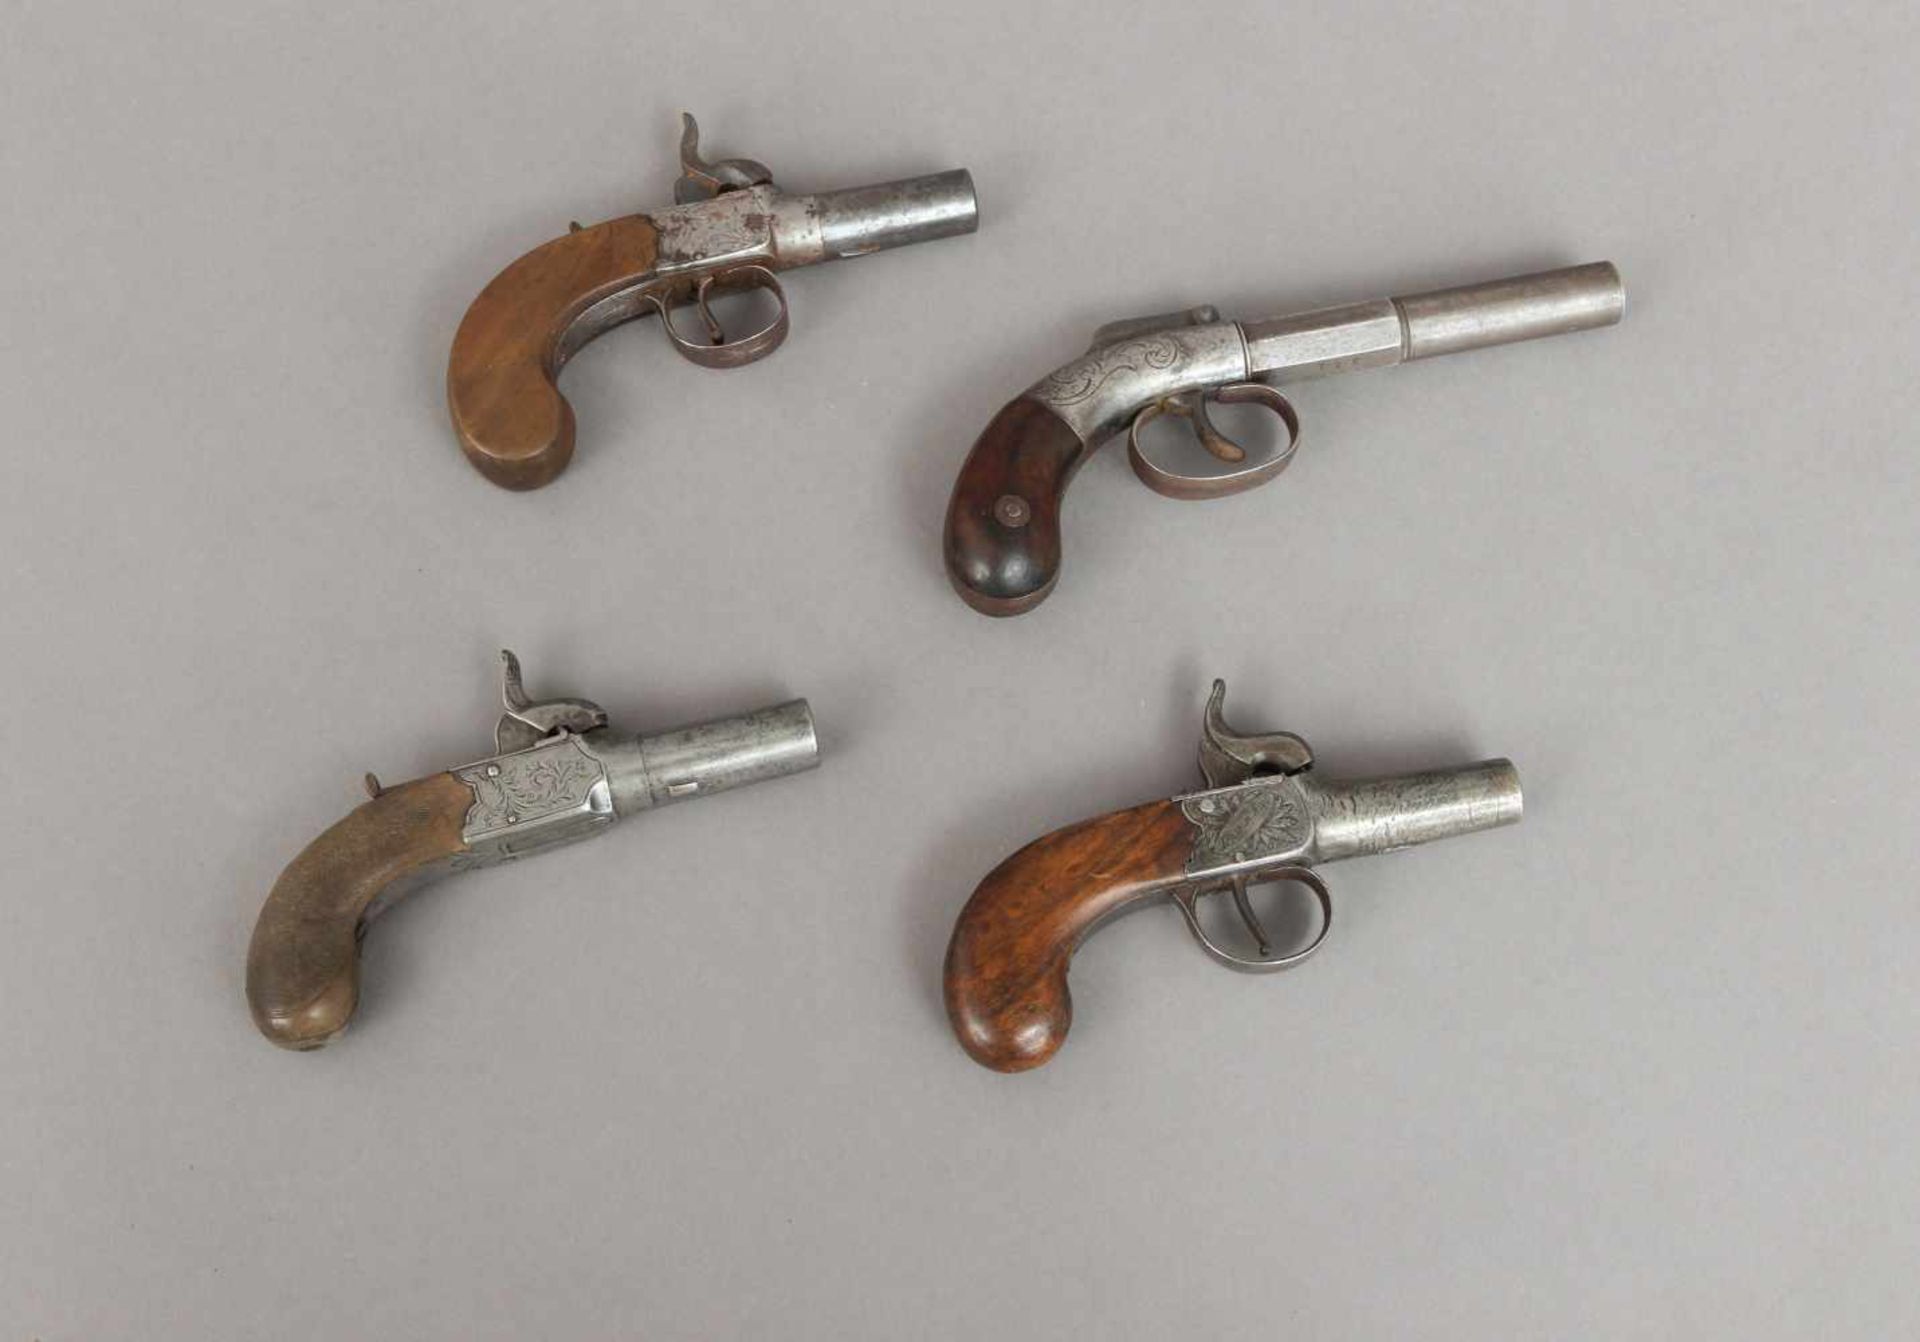 4 Perkussions-Taschenpistolen des 19. JahrhundertsEngland, ca. 1840-50, Hersteller Wednesbury,